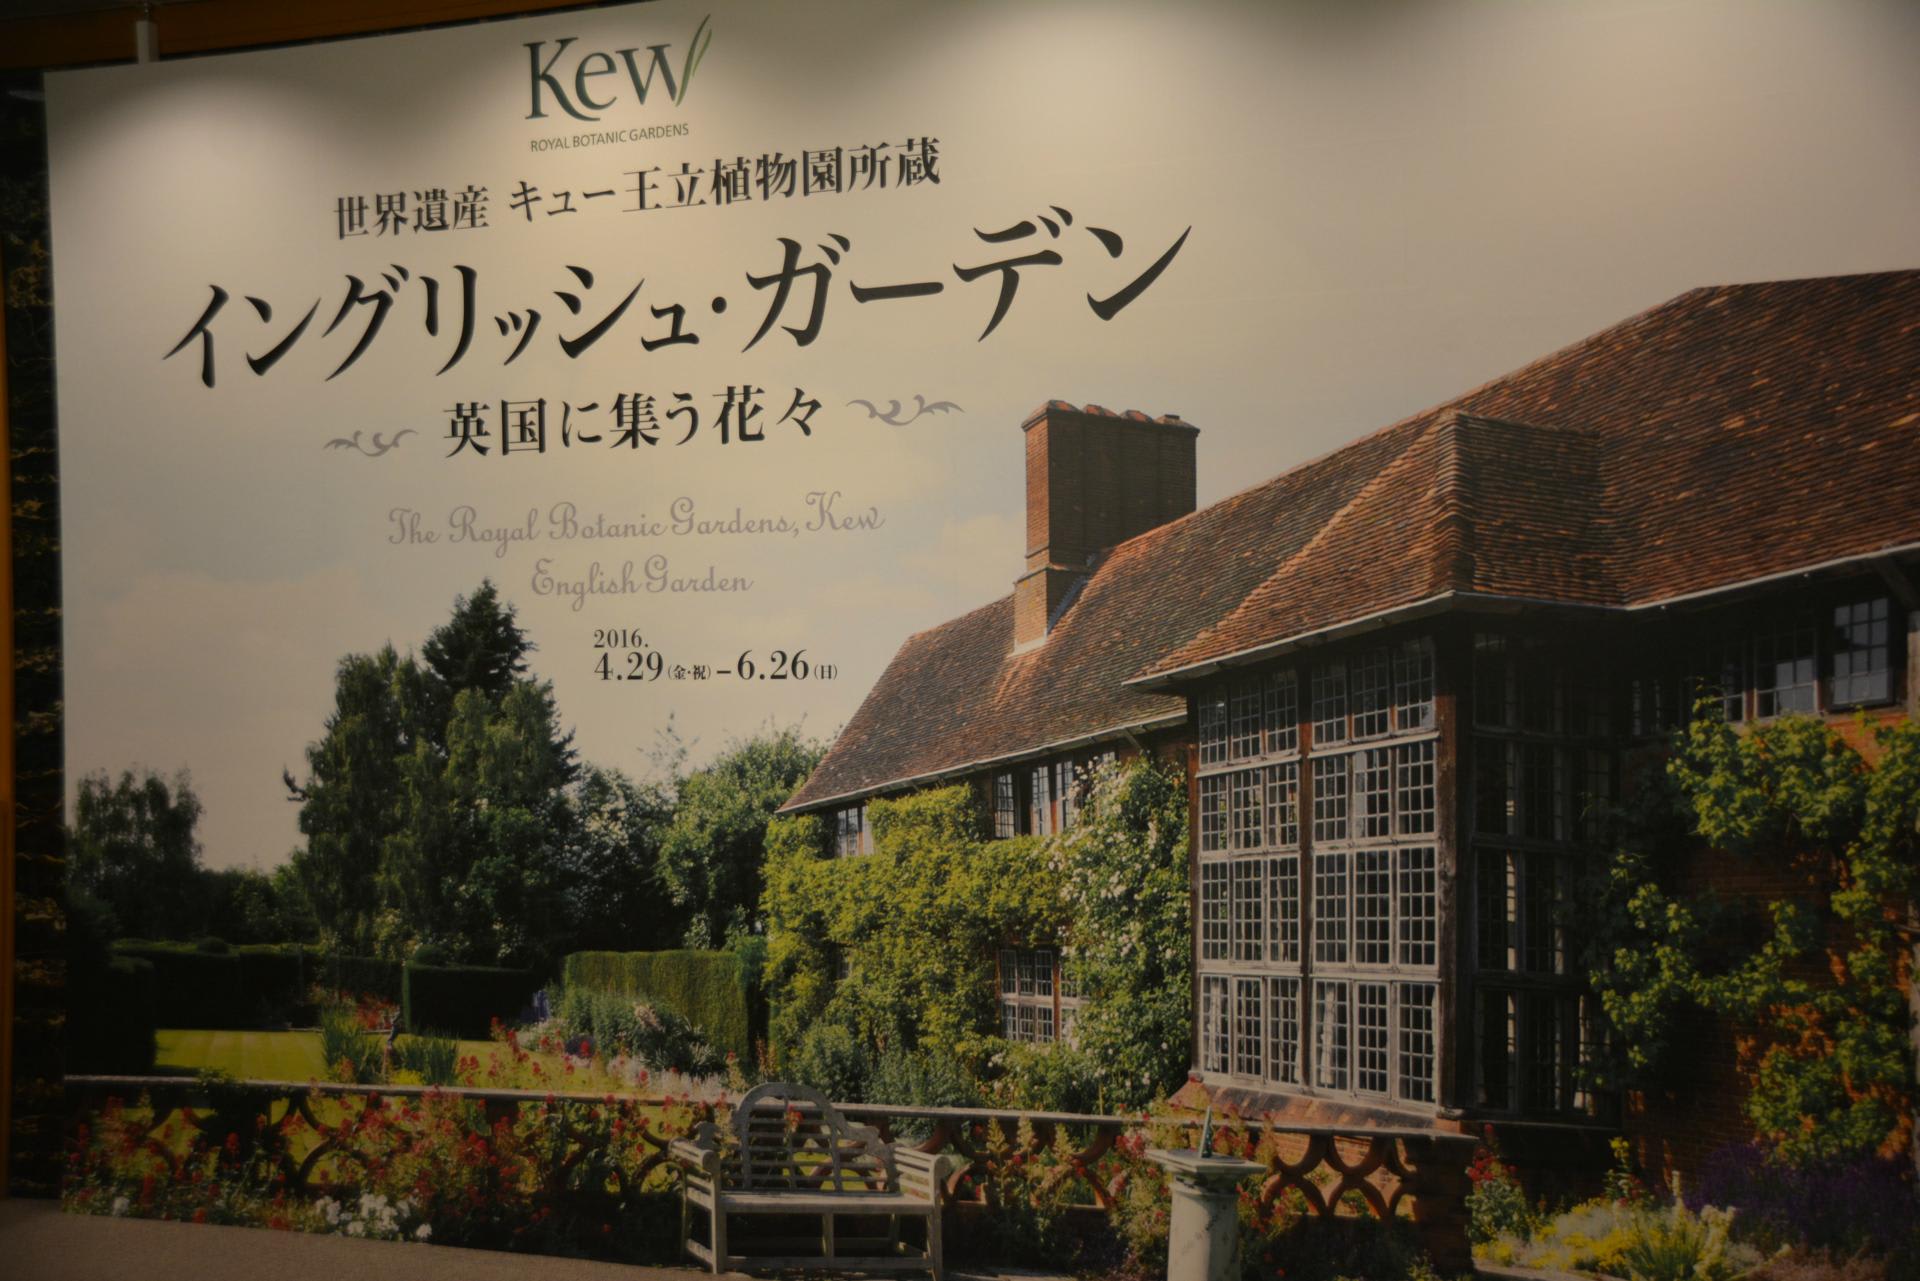 イングリッシュ ガーデン 開催中の京都文化博物館へ 気軽に茶道をしてます